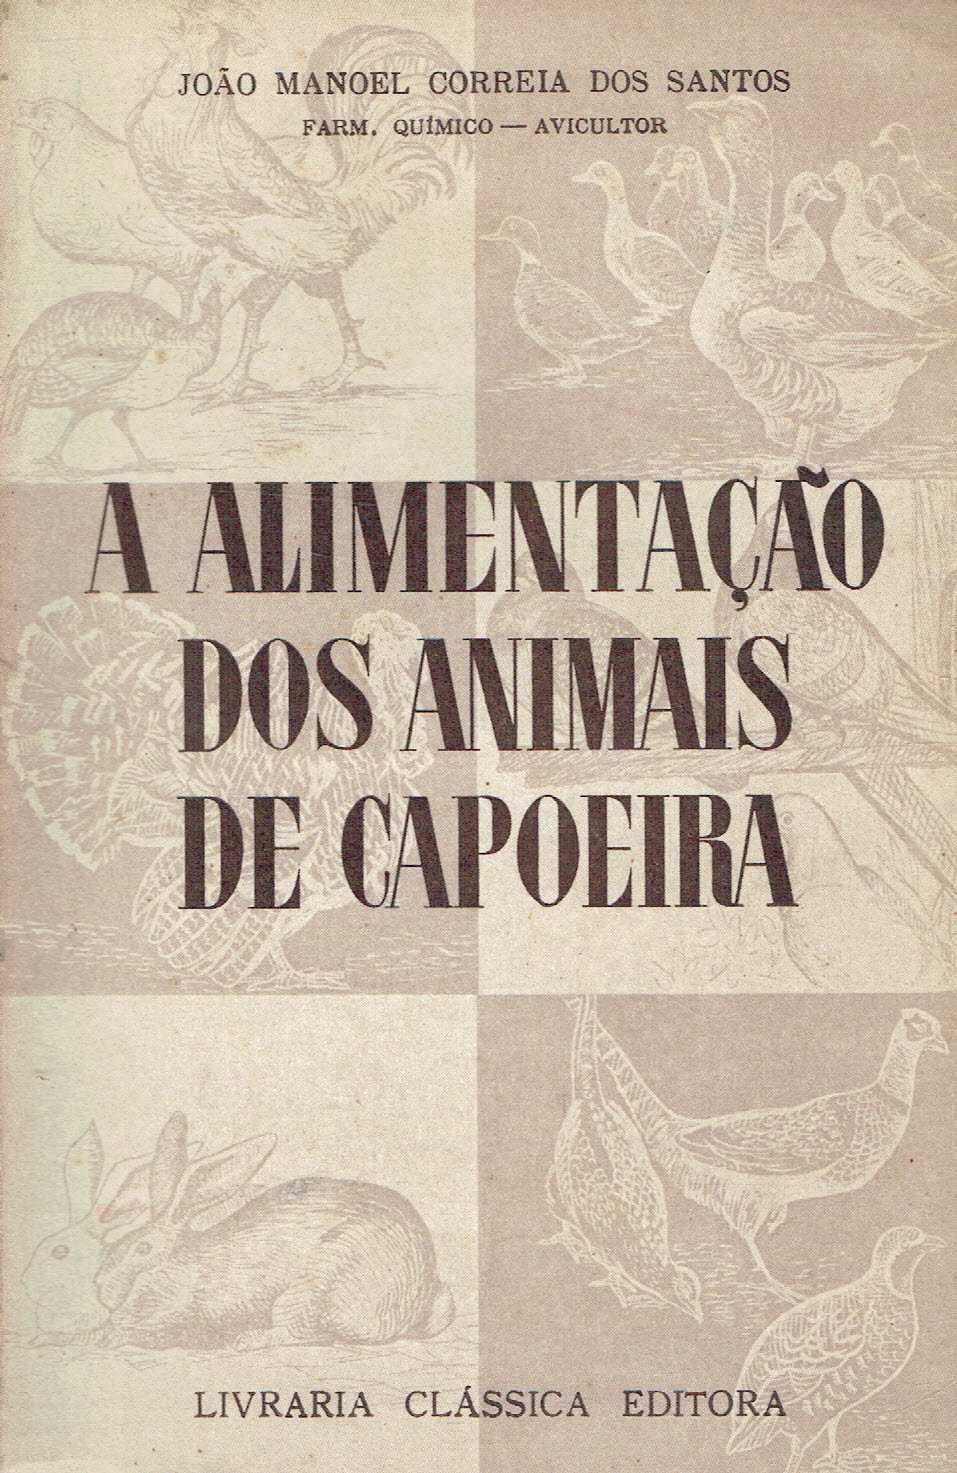 12972
A alimentação dos animais de capoeira 
de  Correia dos Santos